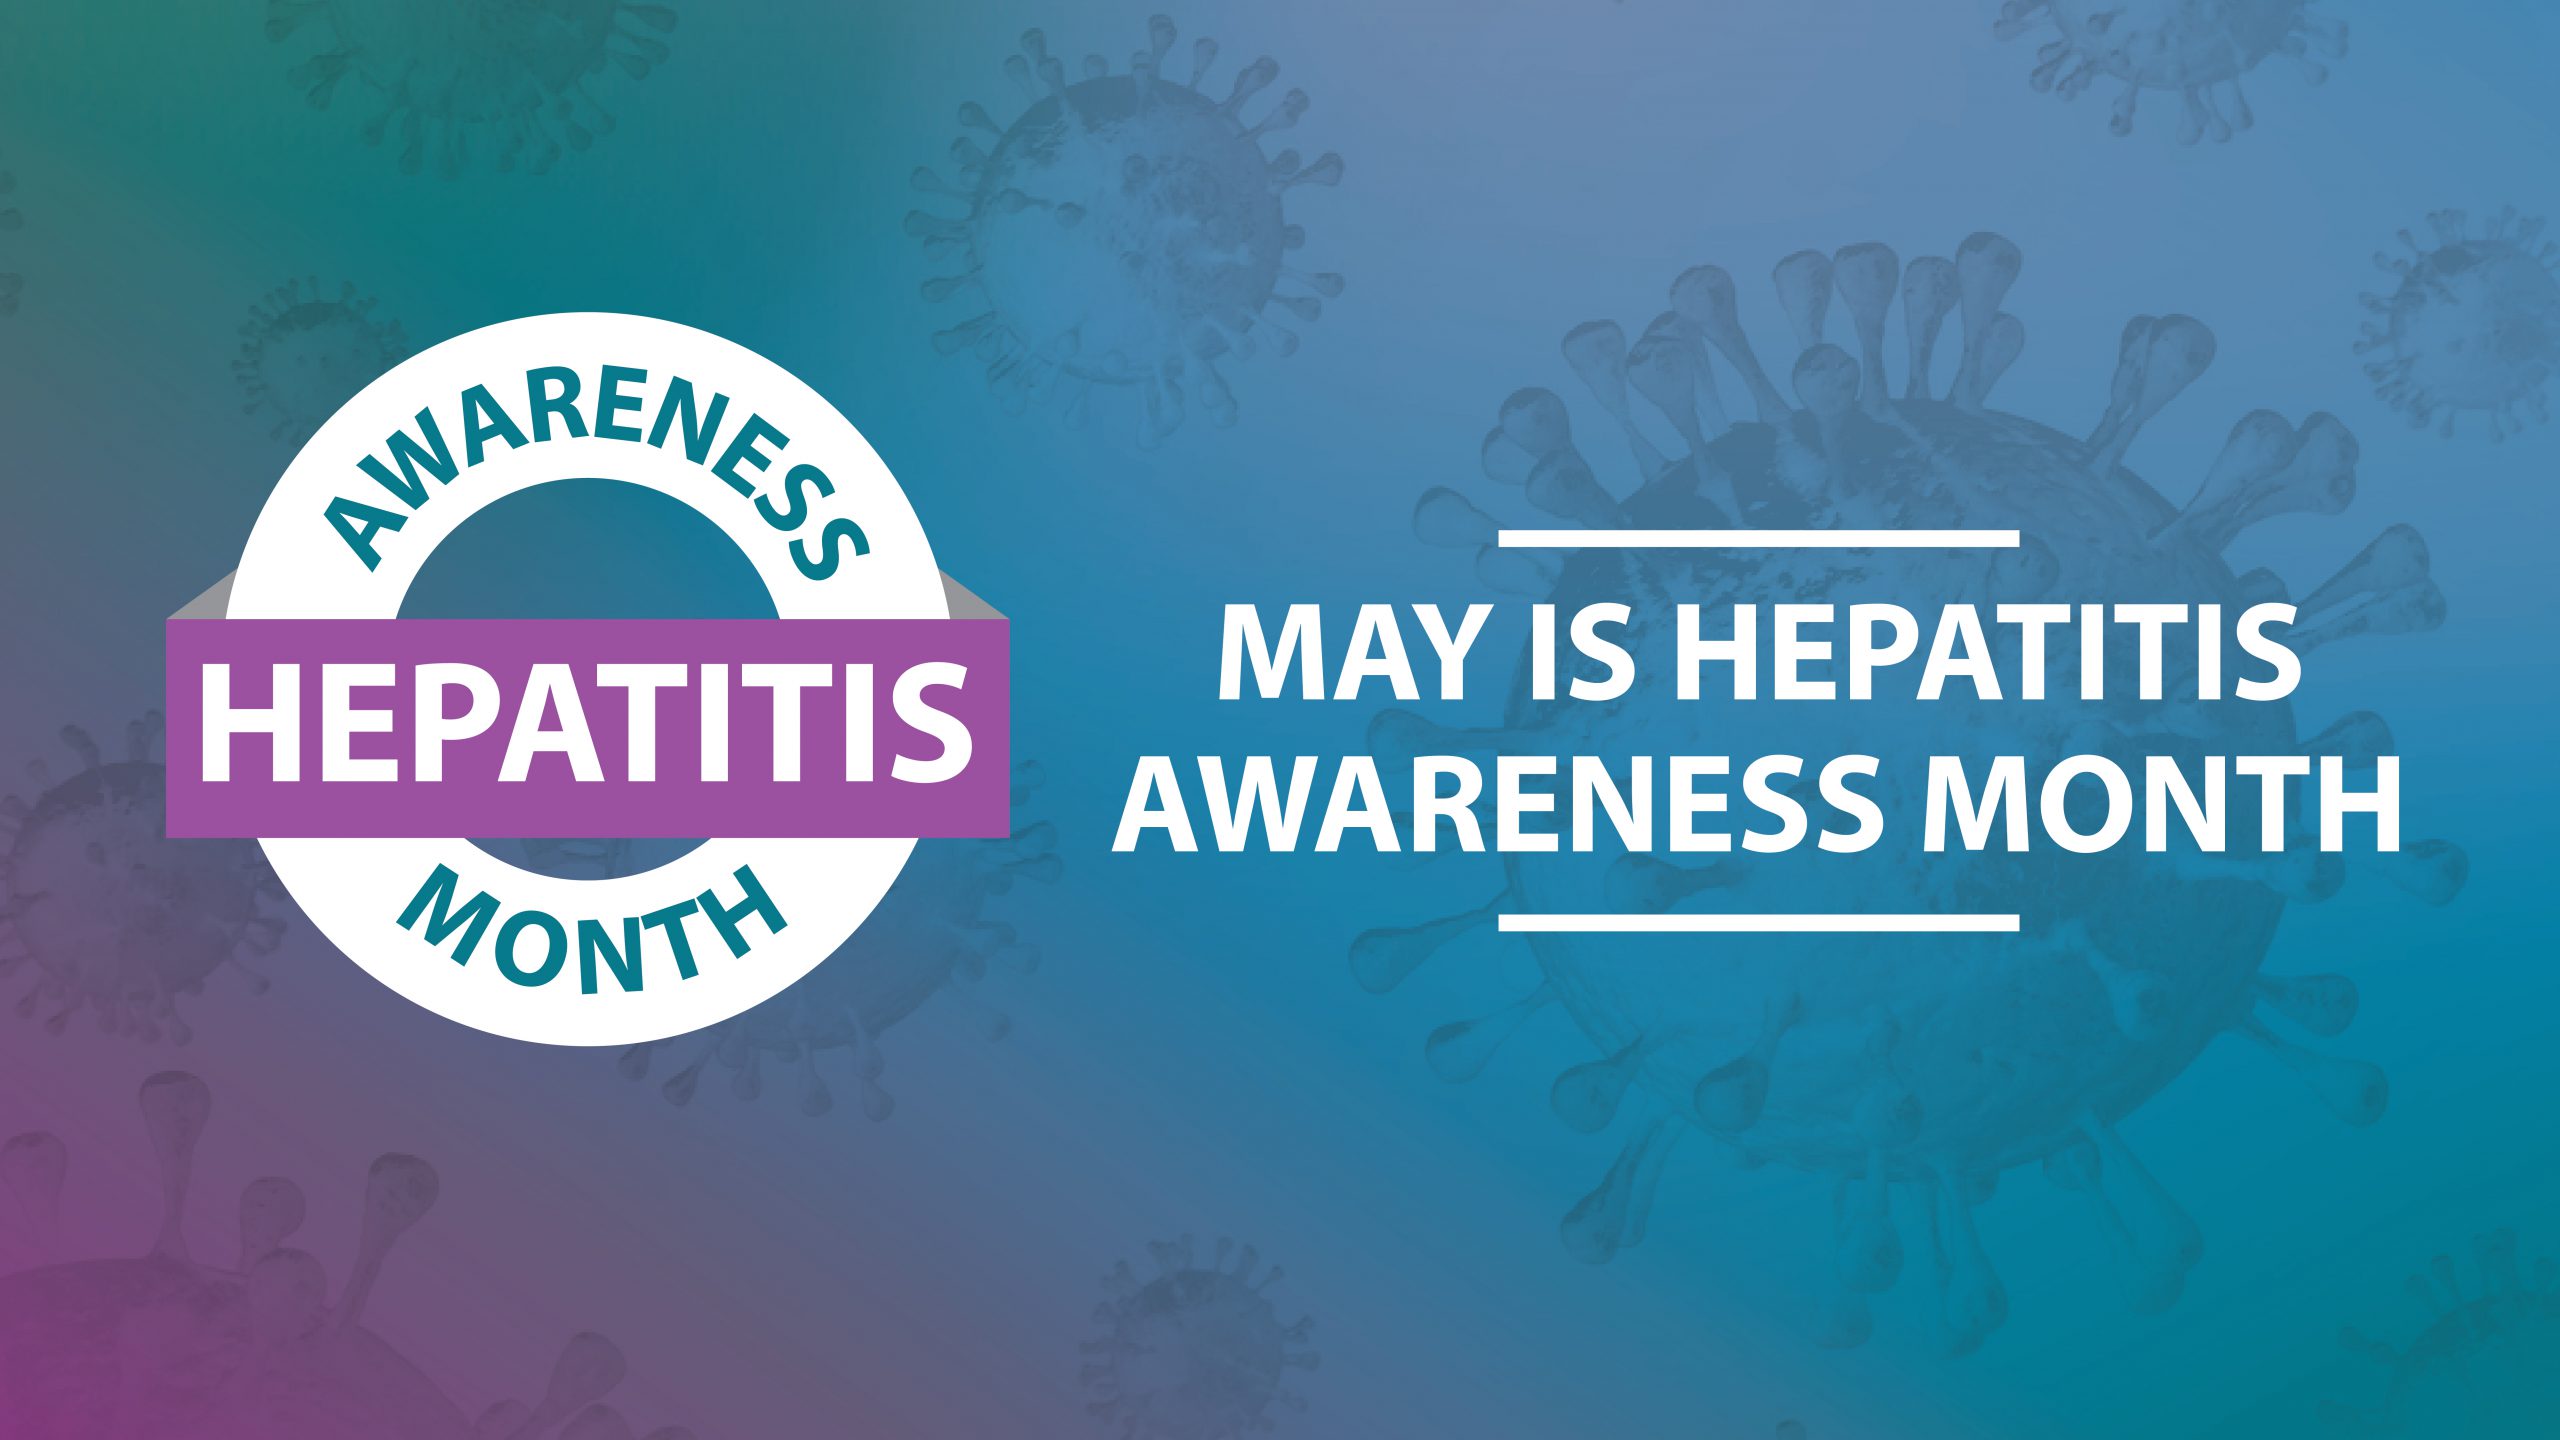 CDC’s Hepatitis Awareness Month online toolkit